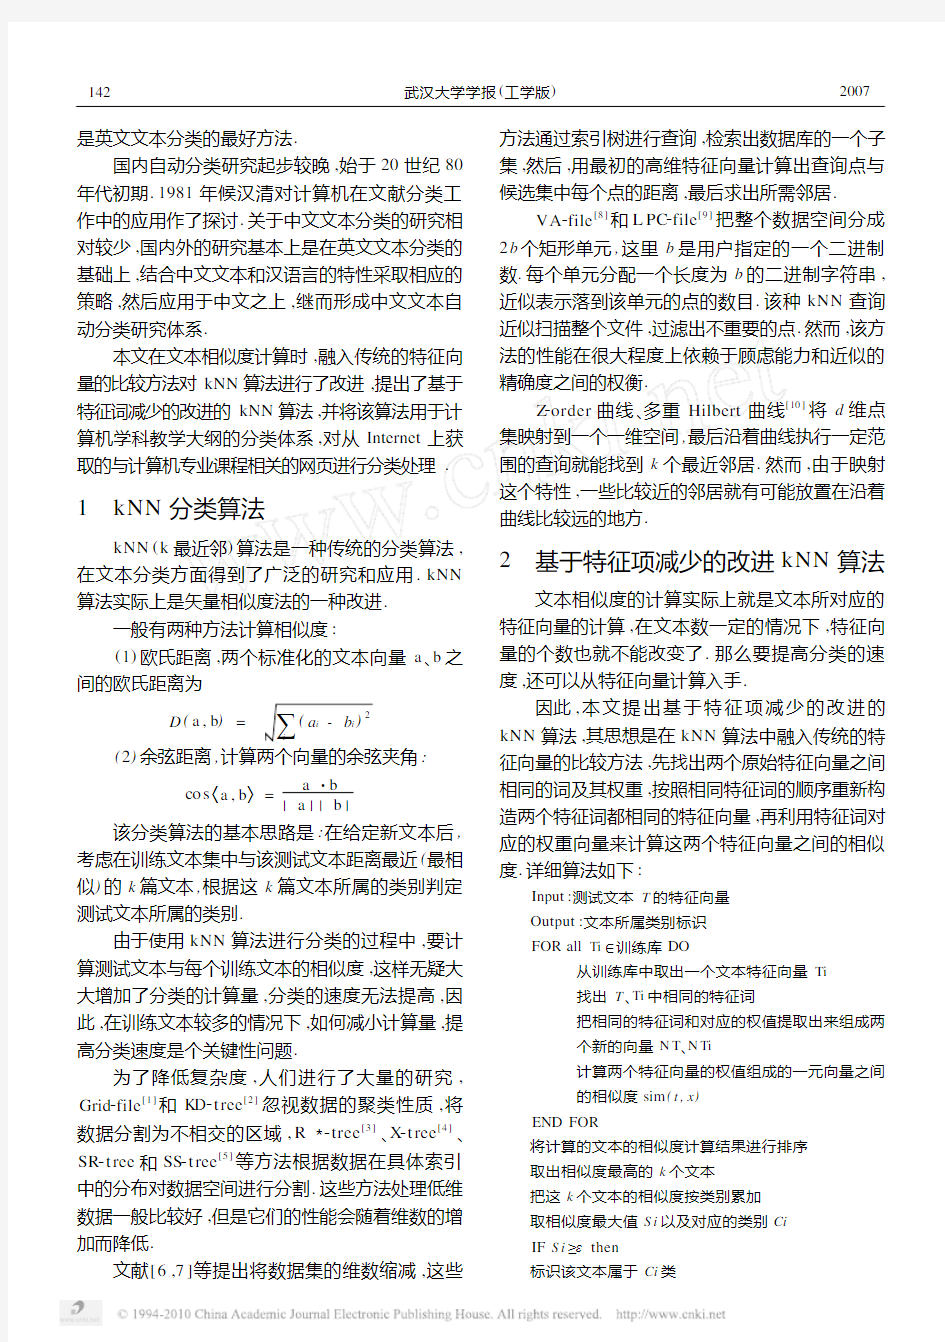 基于改进的kNN算法的中文网页自动分类方法研究